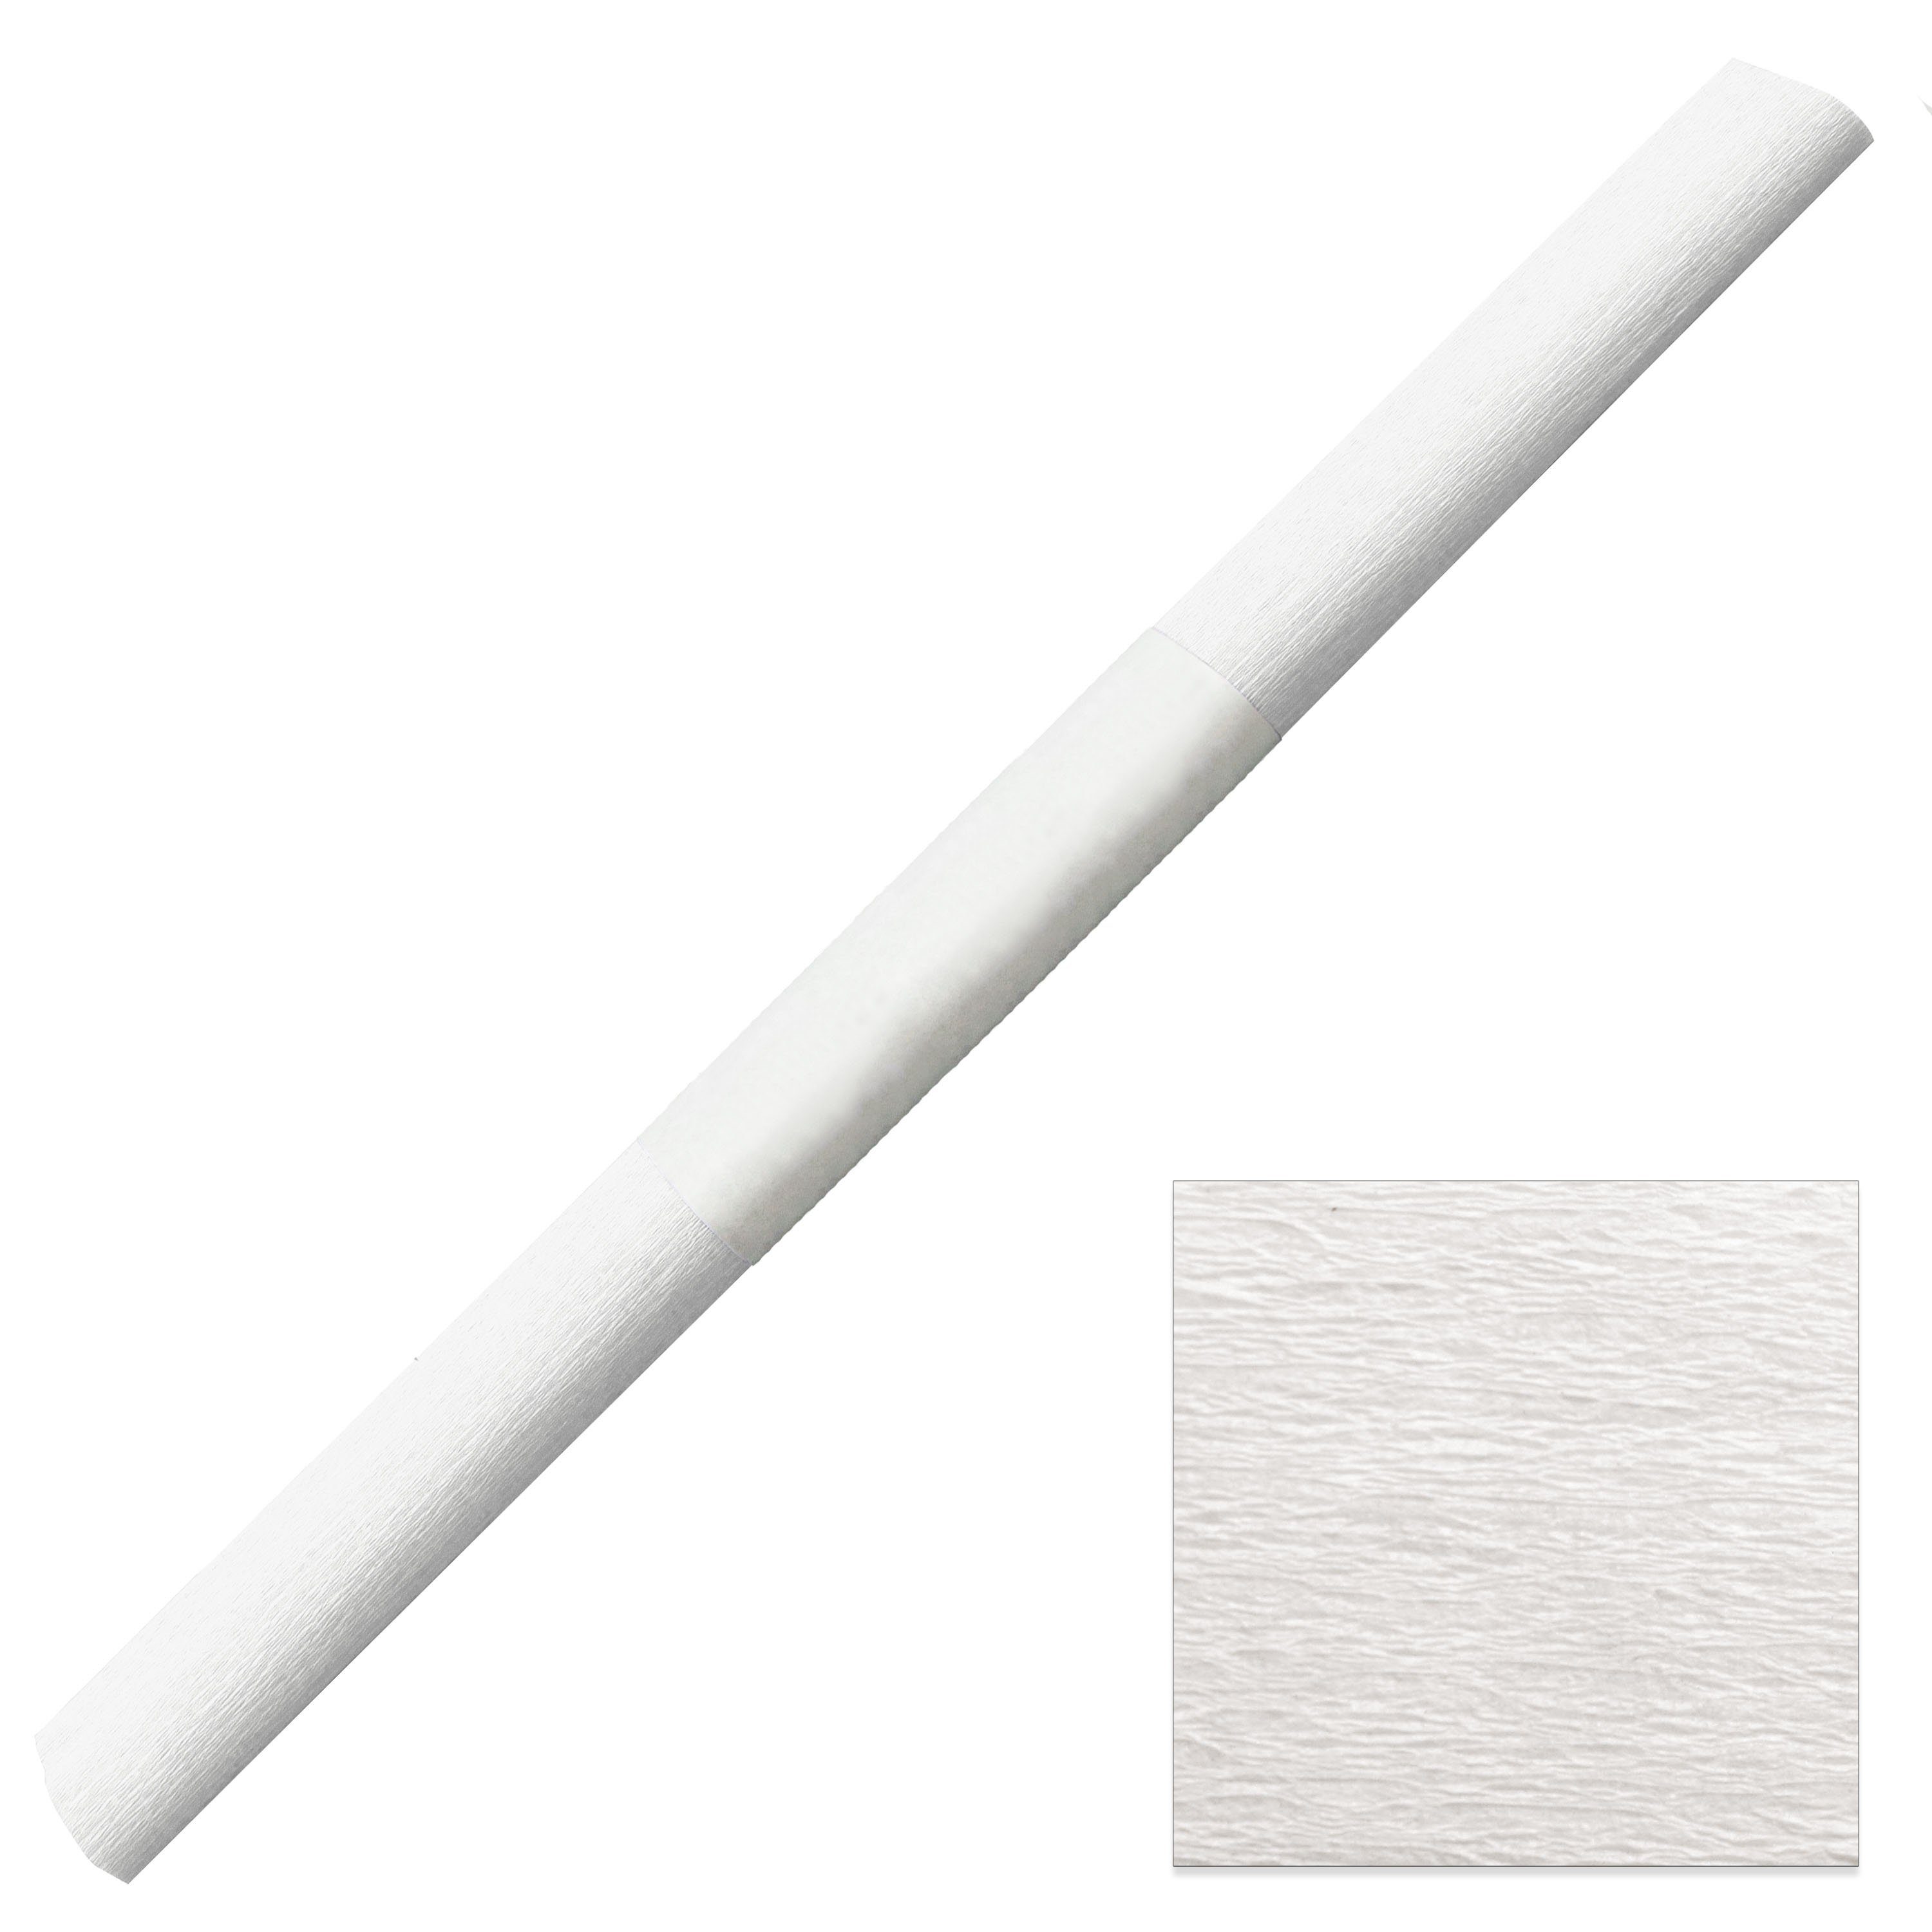 Staufen Papierdekoration Aquarola Krepppapier wasserfest 50x250cm - 1 Rolle mit Banderole weiß